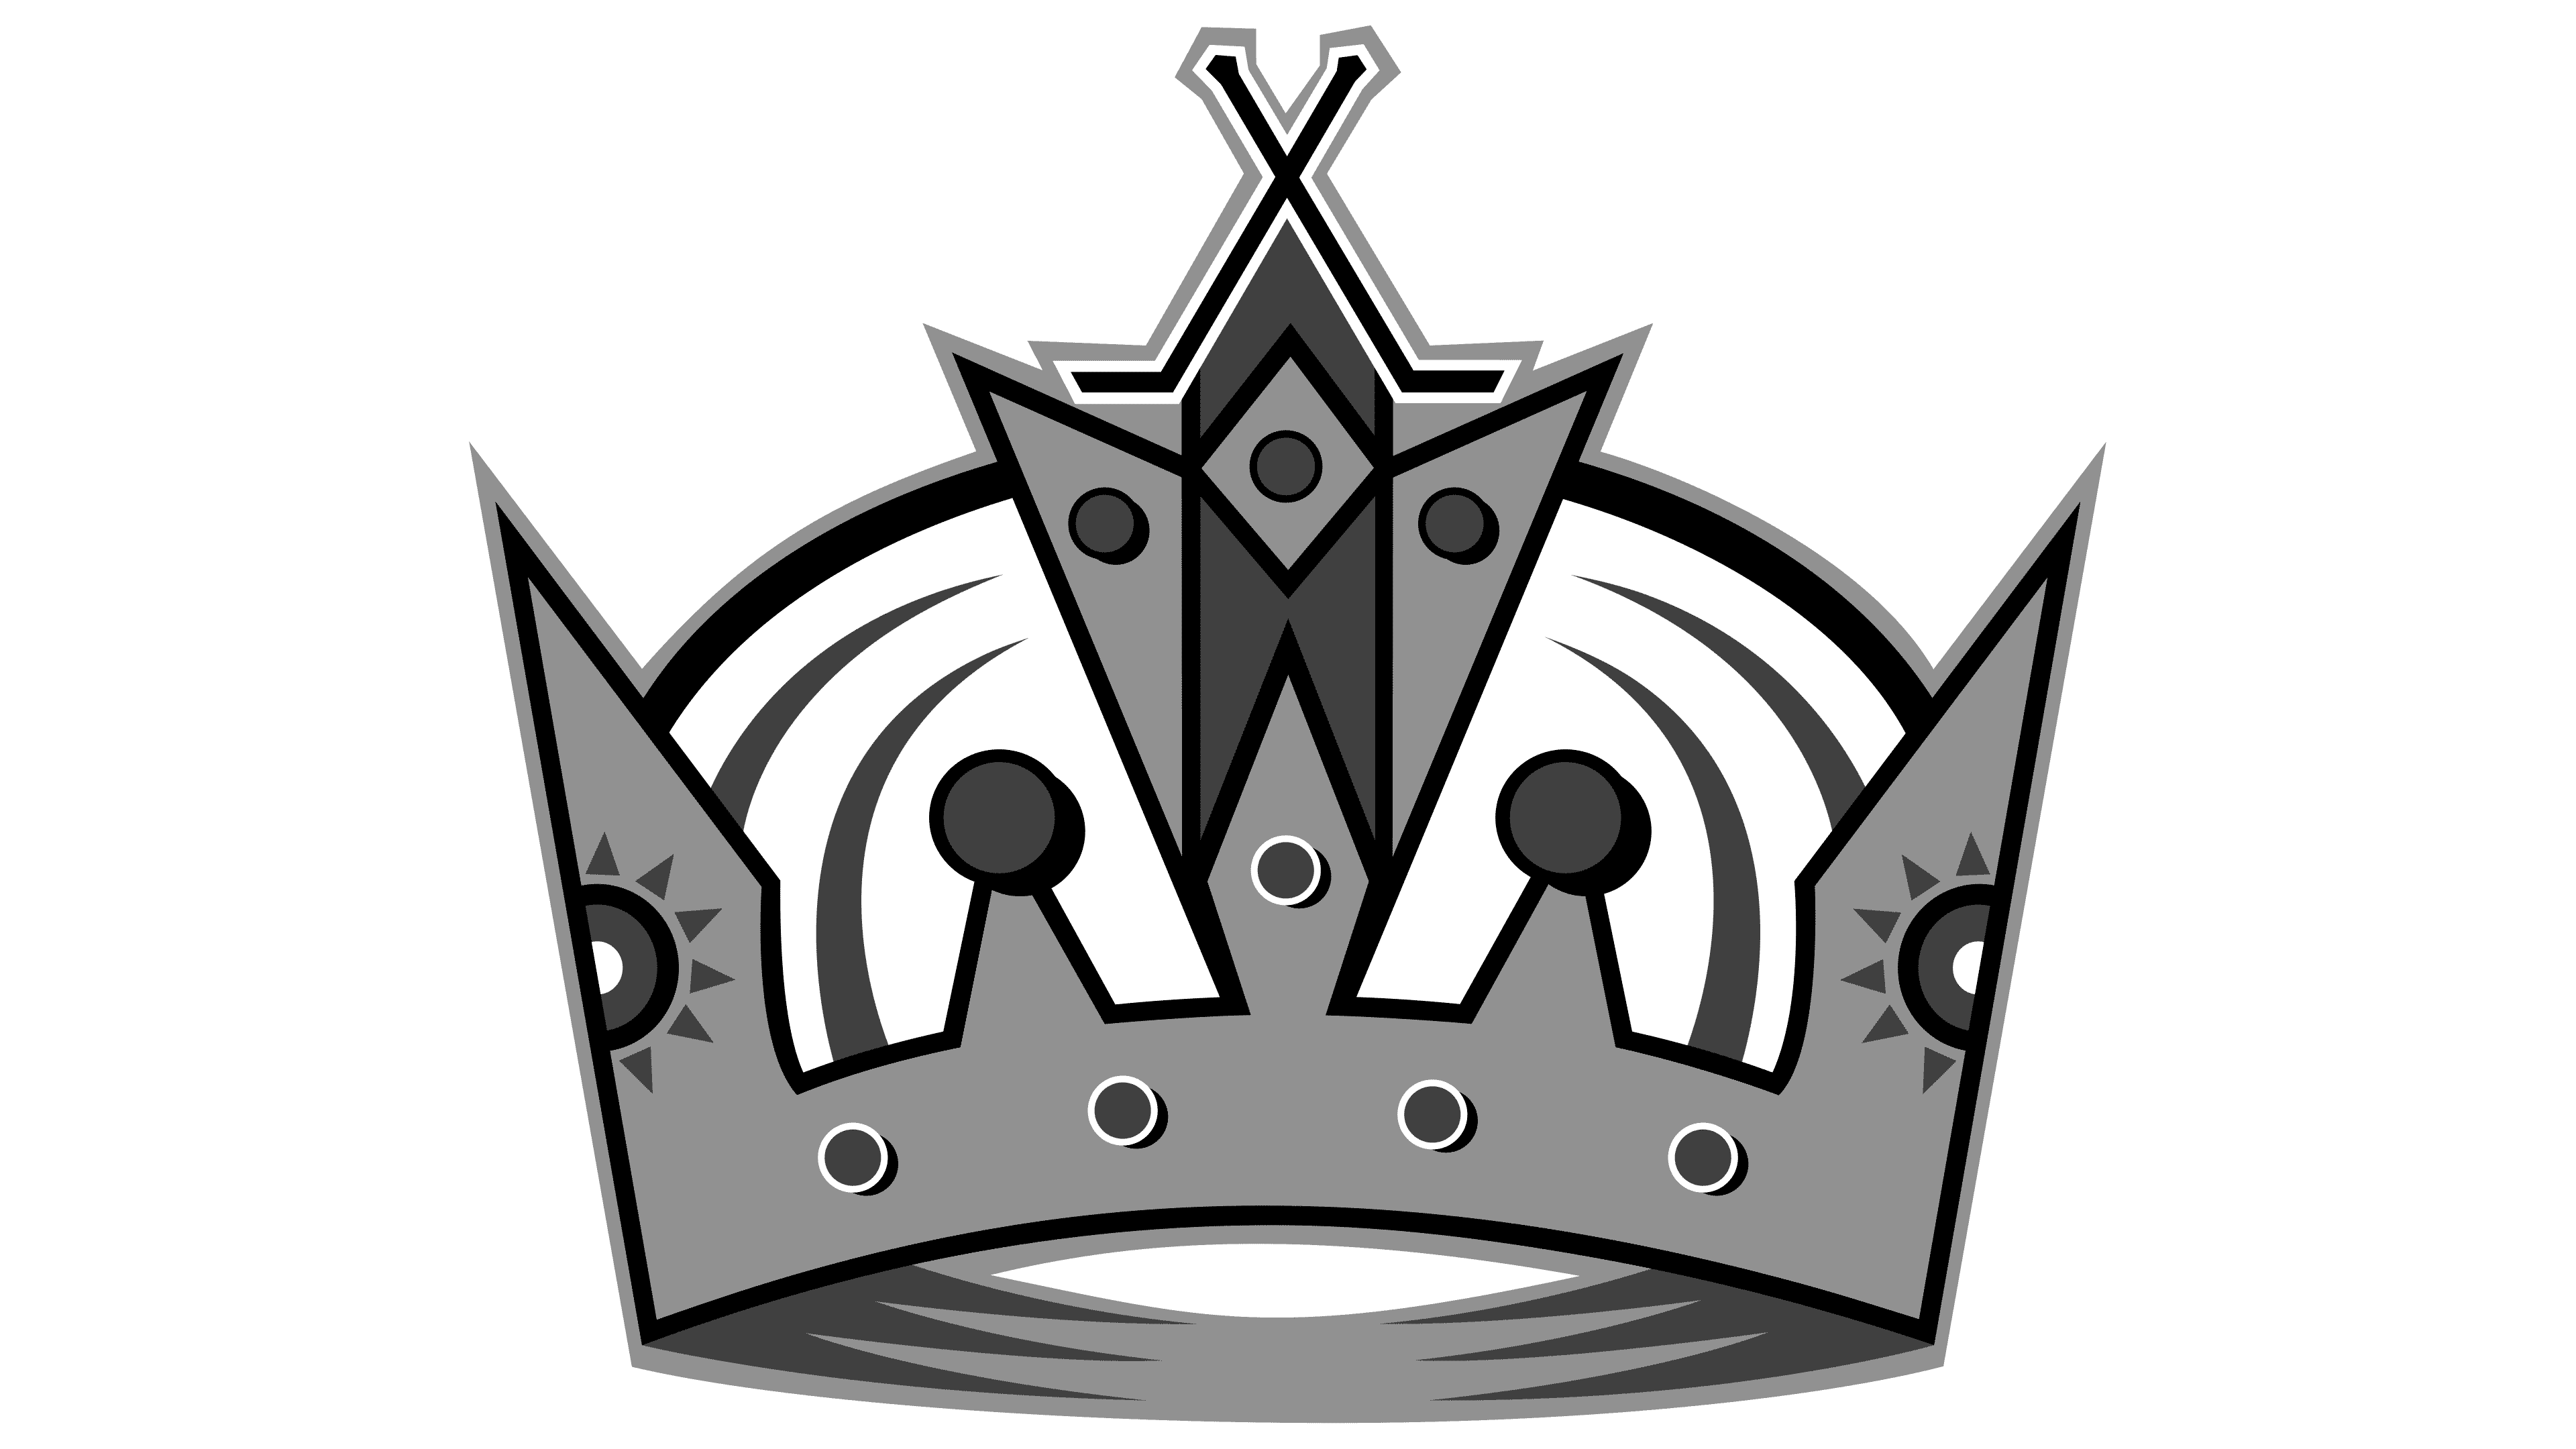 Kings Hockey Crown